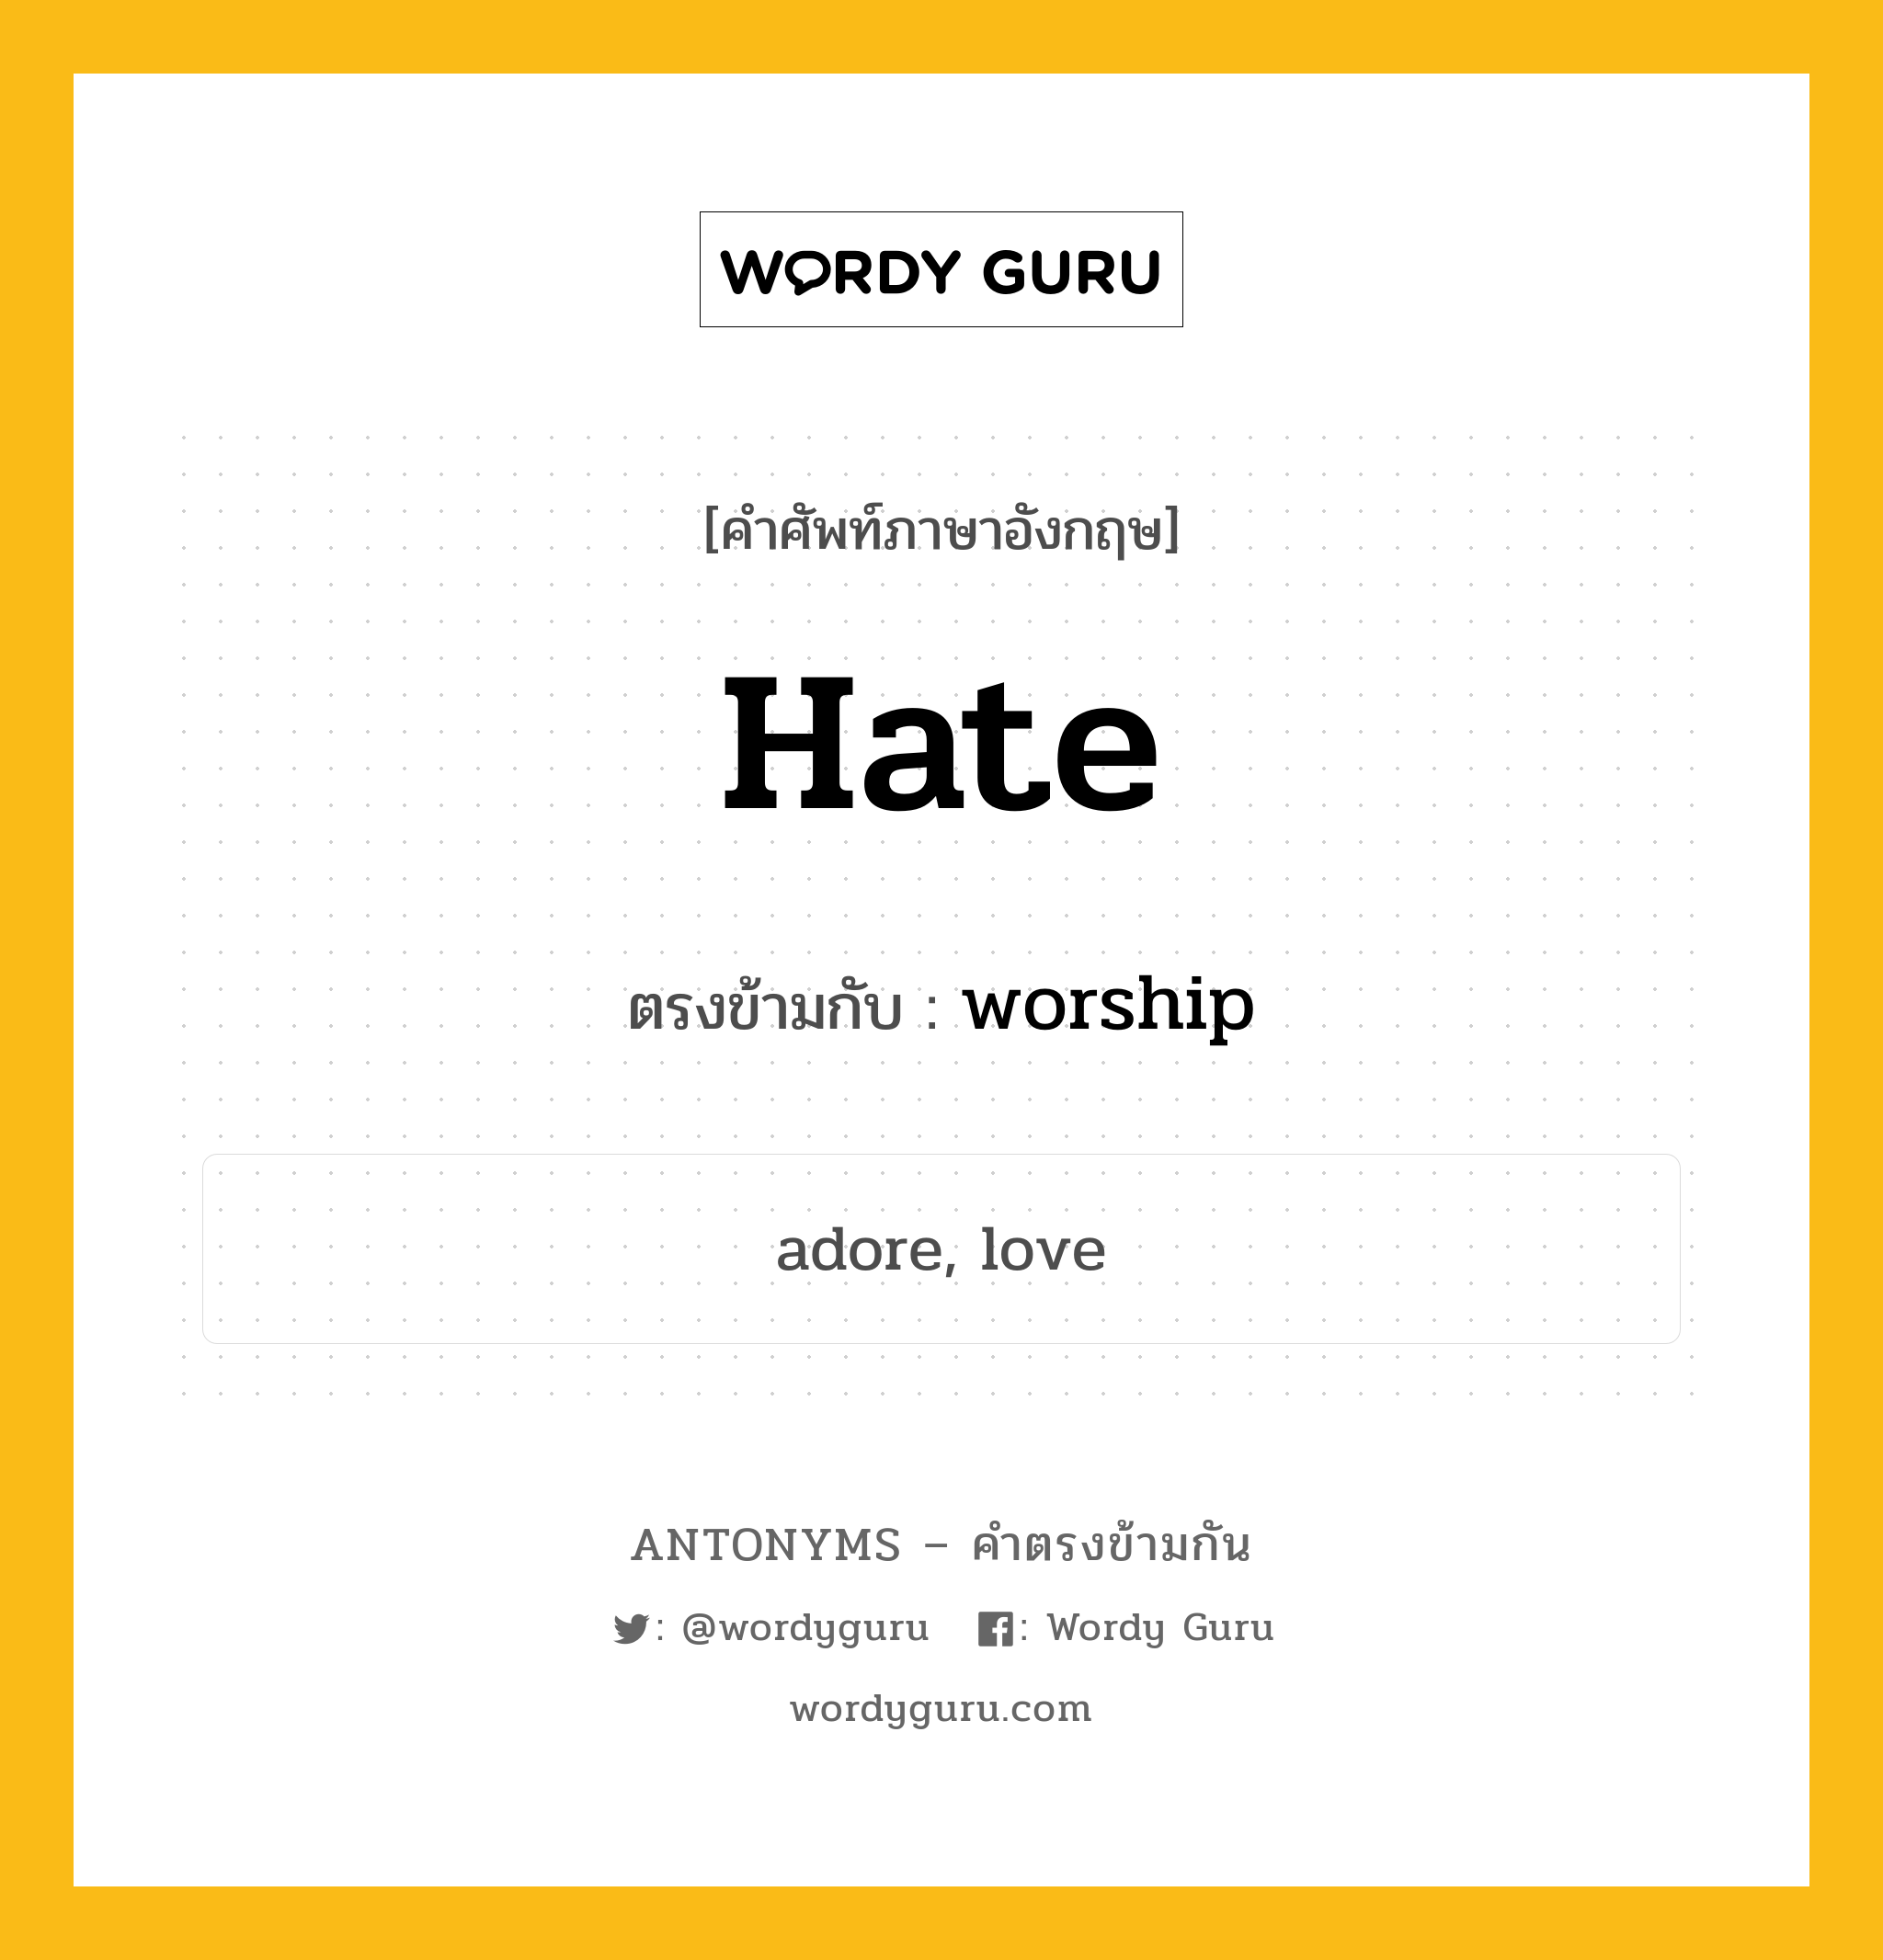 hate เป็นคำตรงข้ามกับคำไหนบ้าง?, คำศัพท์ภาษาอังกฤษ hate ตรงข้ามกับ worship หมวด worship